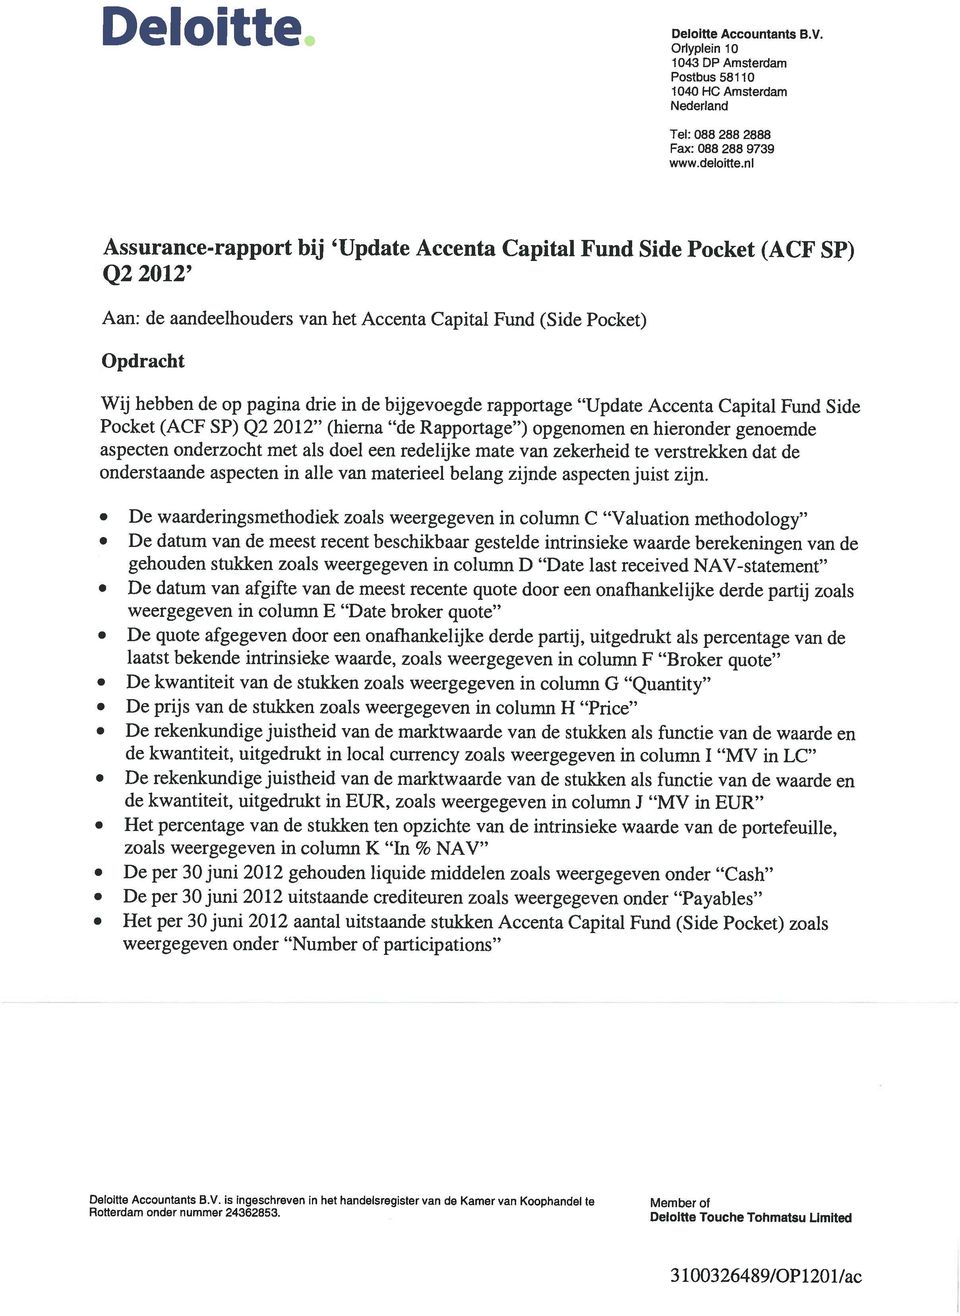 bijgevoegde rapportage Update Accenta Capital Fund Side Pocket (ACF SP) Q2 2012 (hierna de Rapportage ) opgenomen en hieronder genoemde aspecten onderzocht met als doel een redelijke mate van